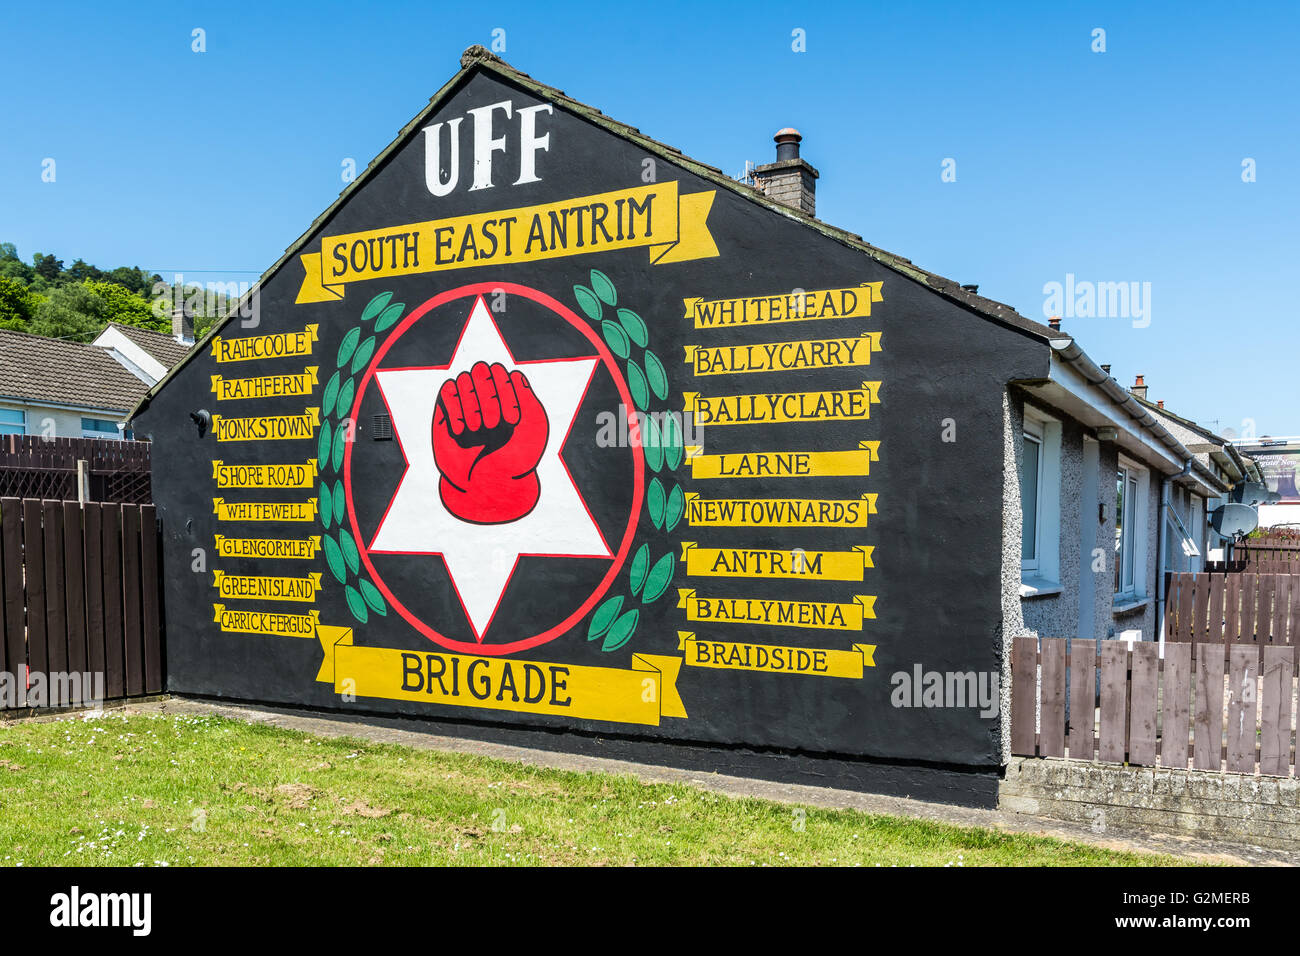 UFF South East Antrim Brigade murale a Cloughfern, nella contea di Antrim in Irlanda del Nord. Foto Stock